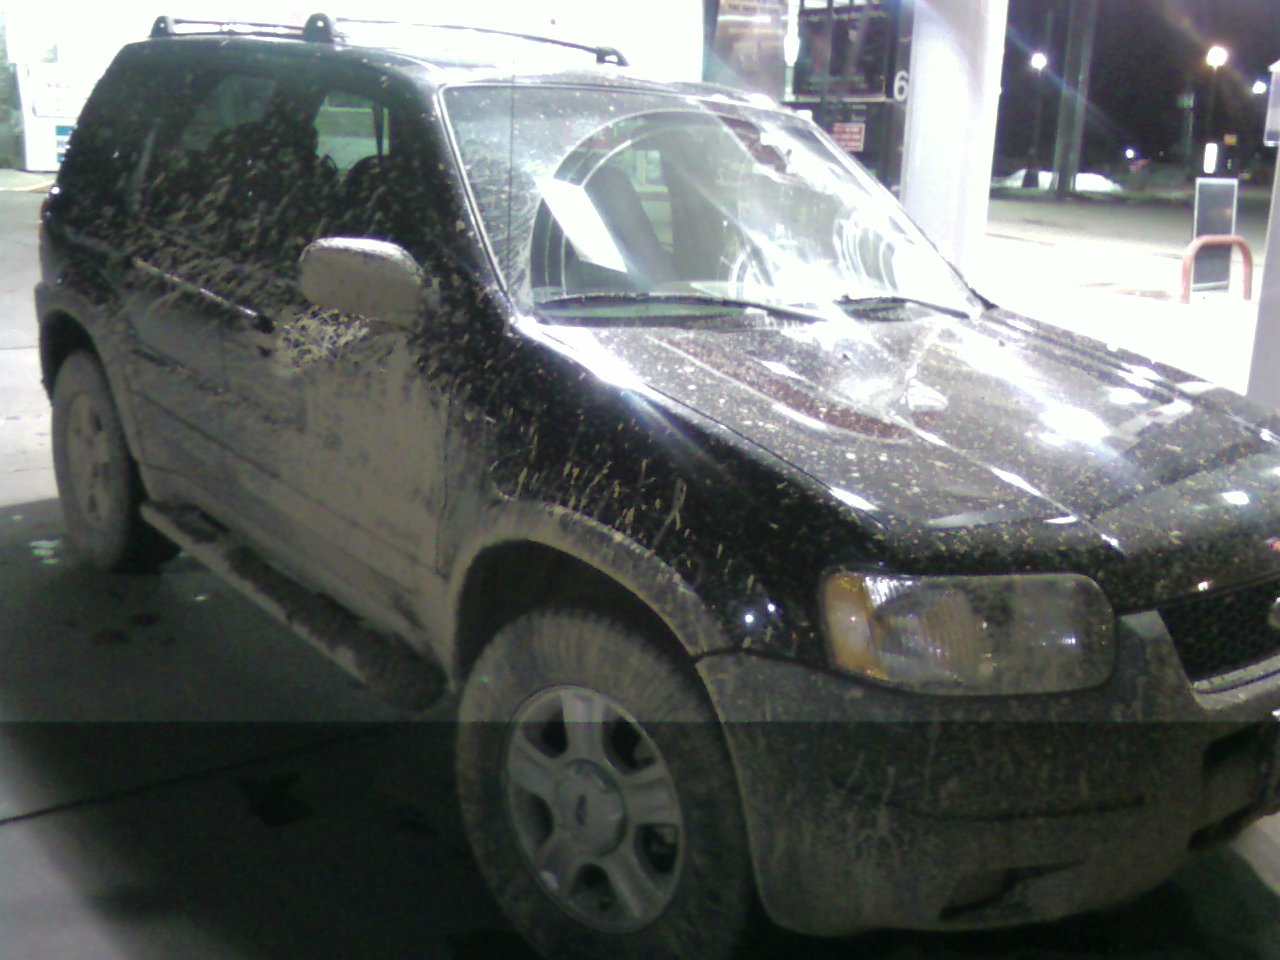 [Mud+On+Car.jpg]